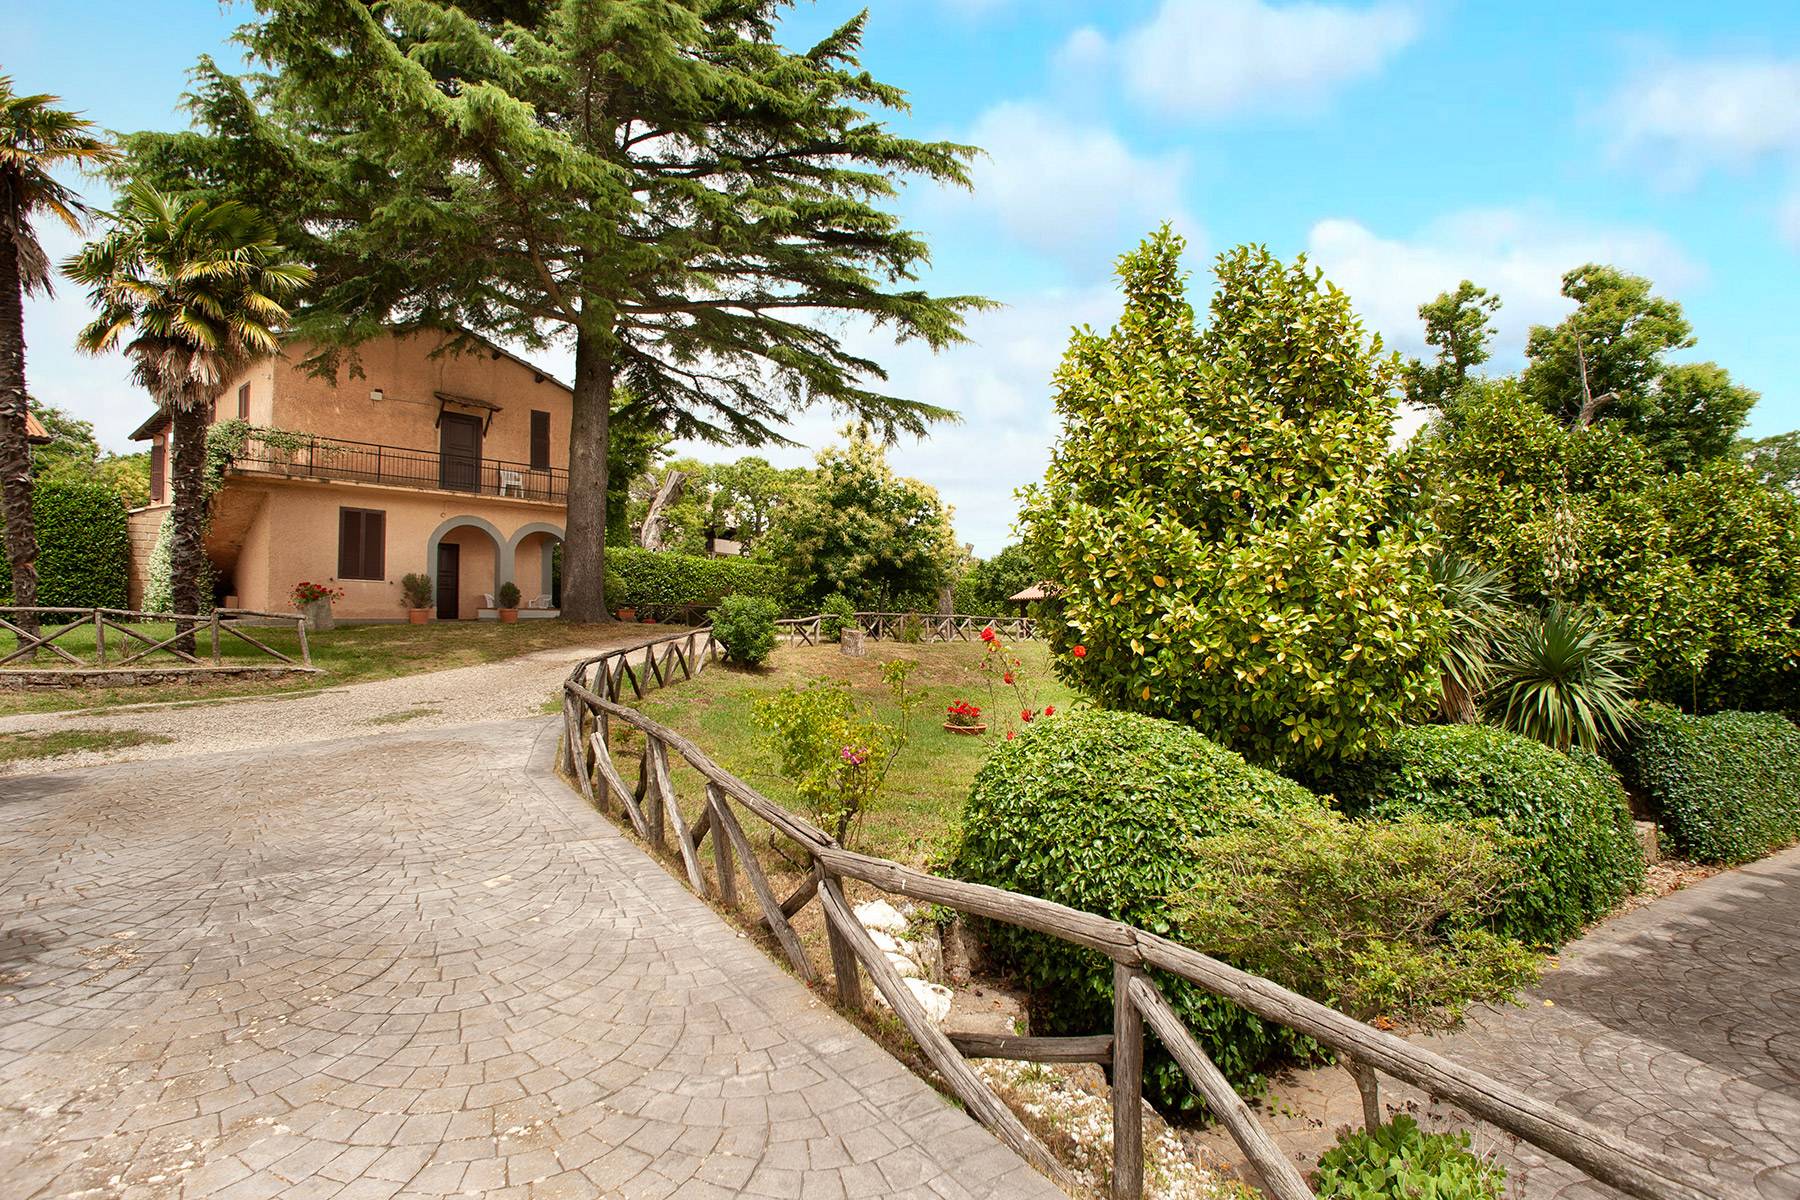 Villa in Vendita a Ronciglione: 5 locali, 500 mq - Foto 3